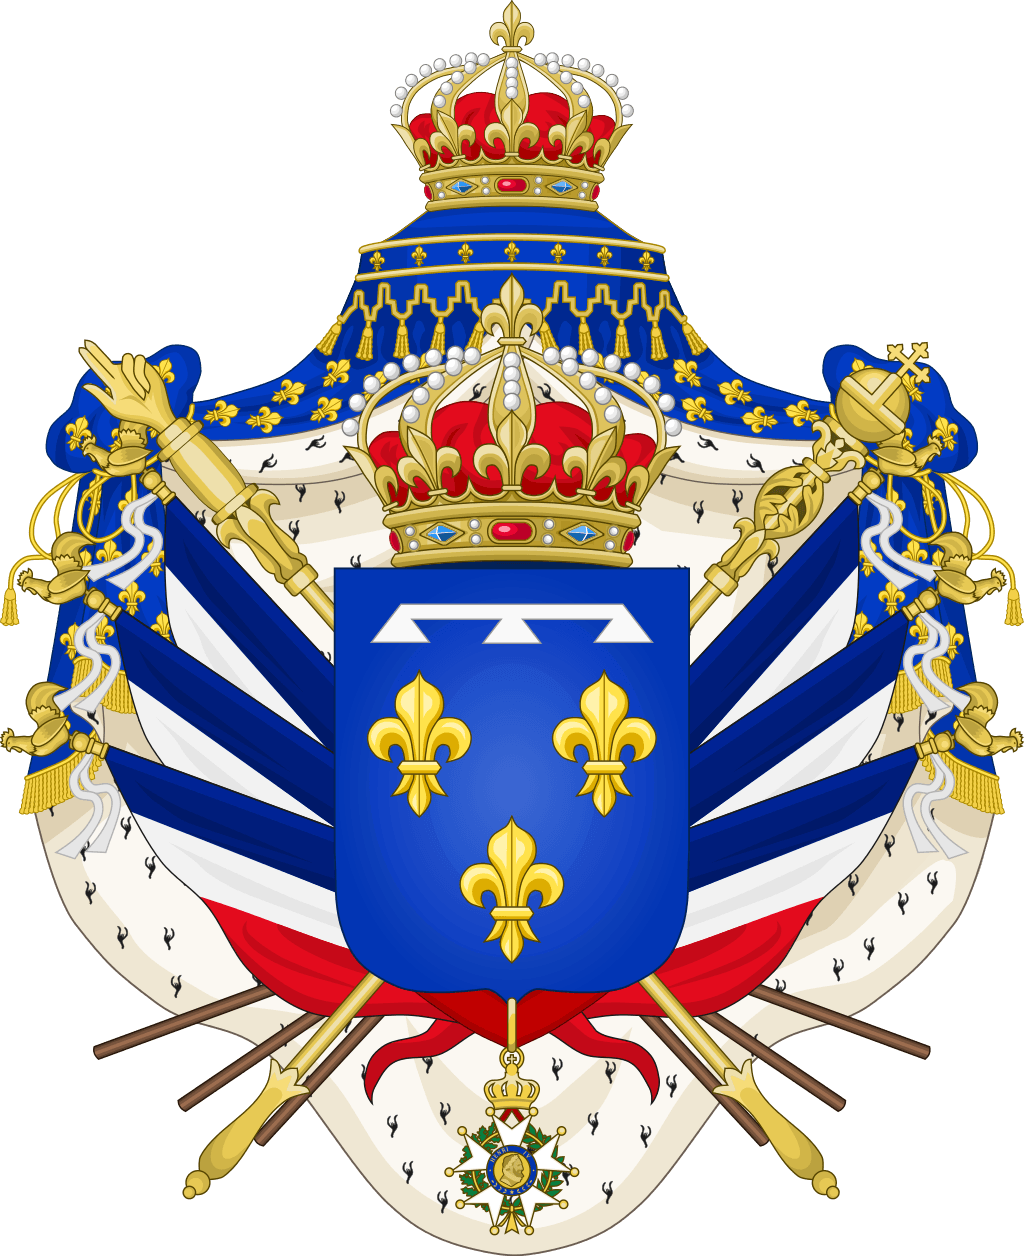 Wappen der Könige von Frankreich Orléans